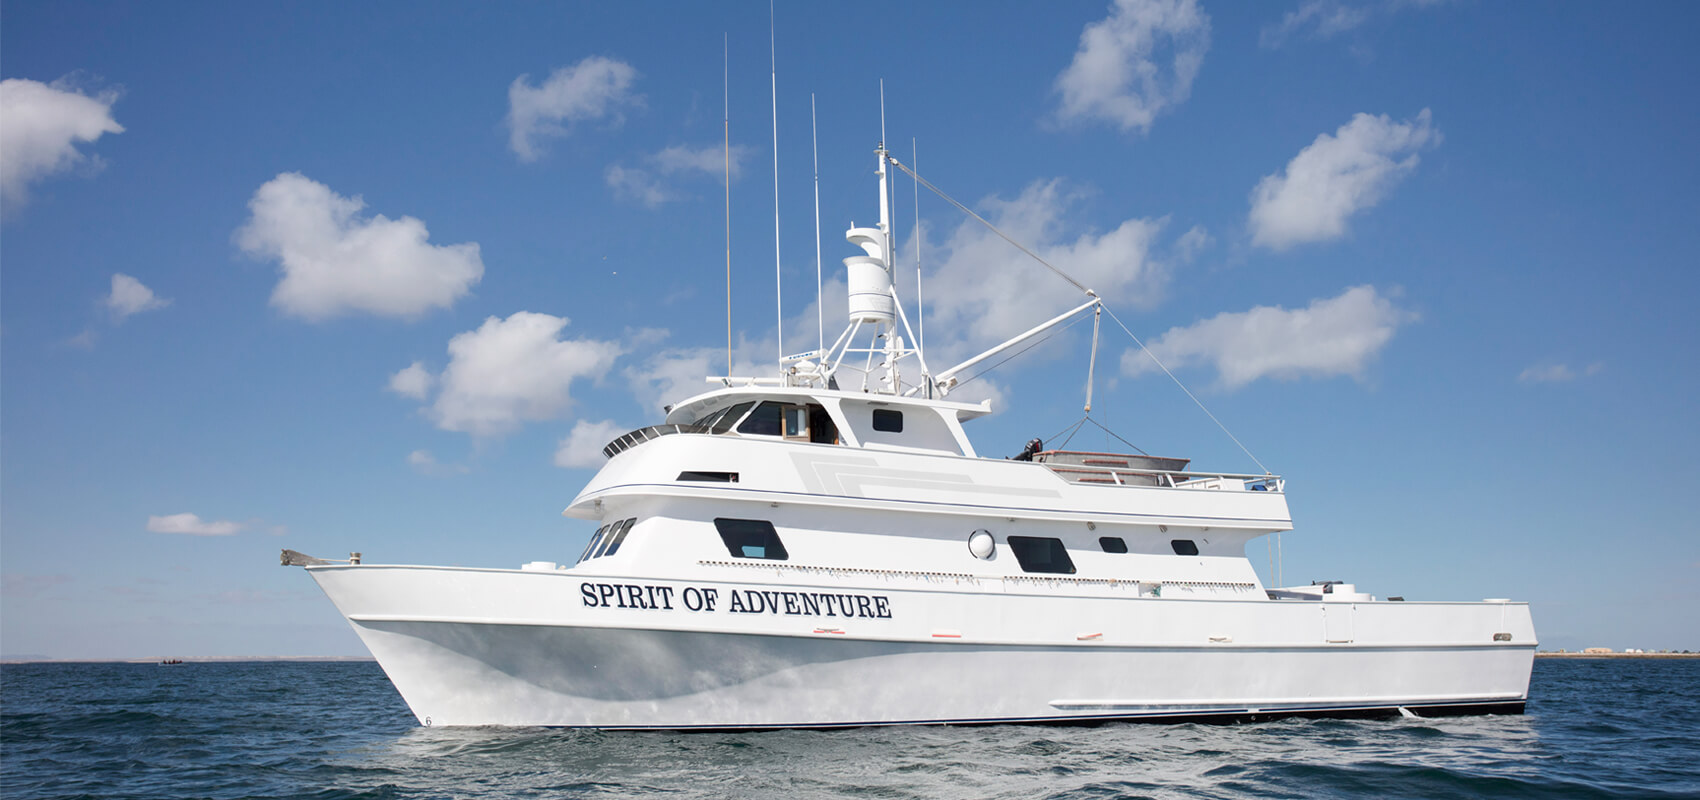 https://www.soasportfishing.com/images/slider/home/Spirit-of-Adventure-Boat.jpg